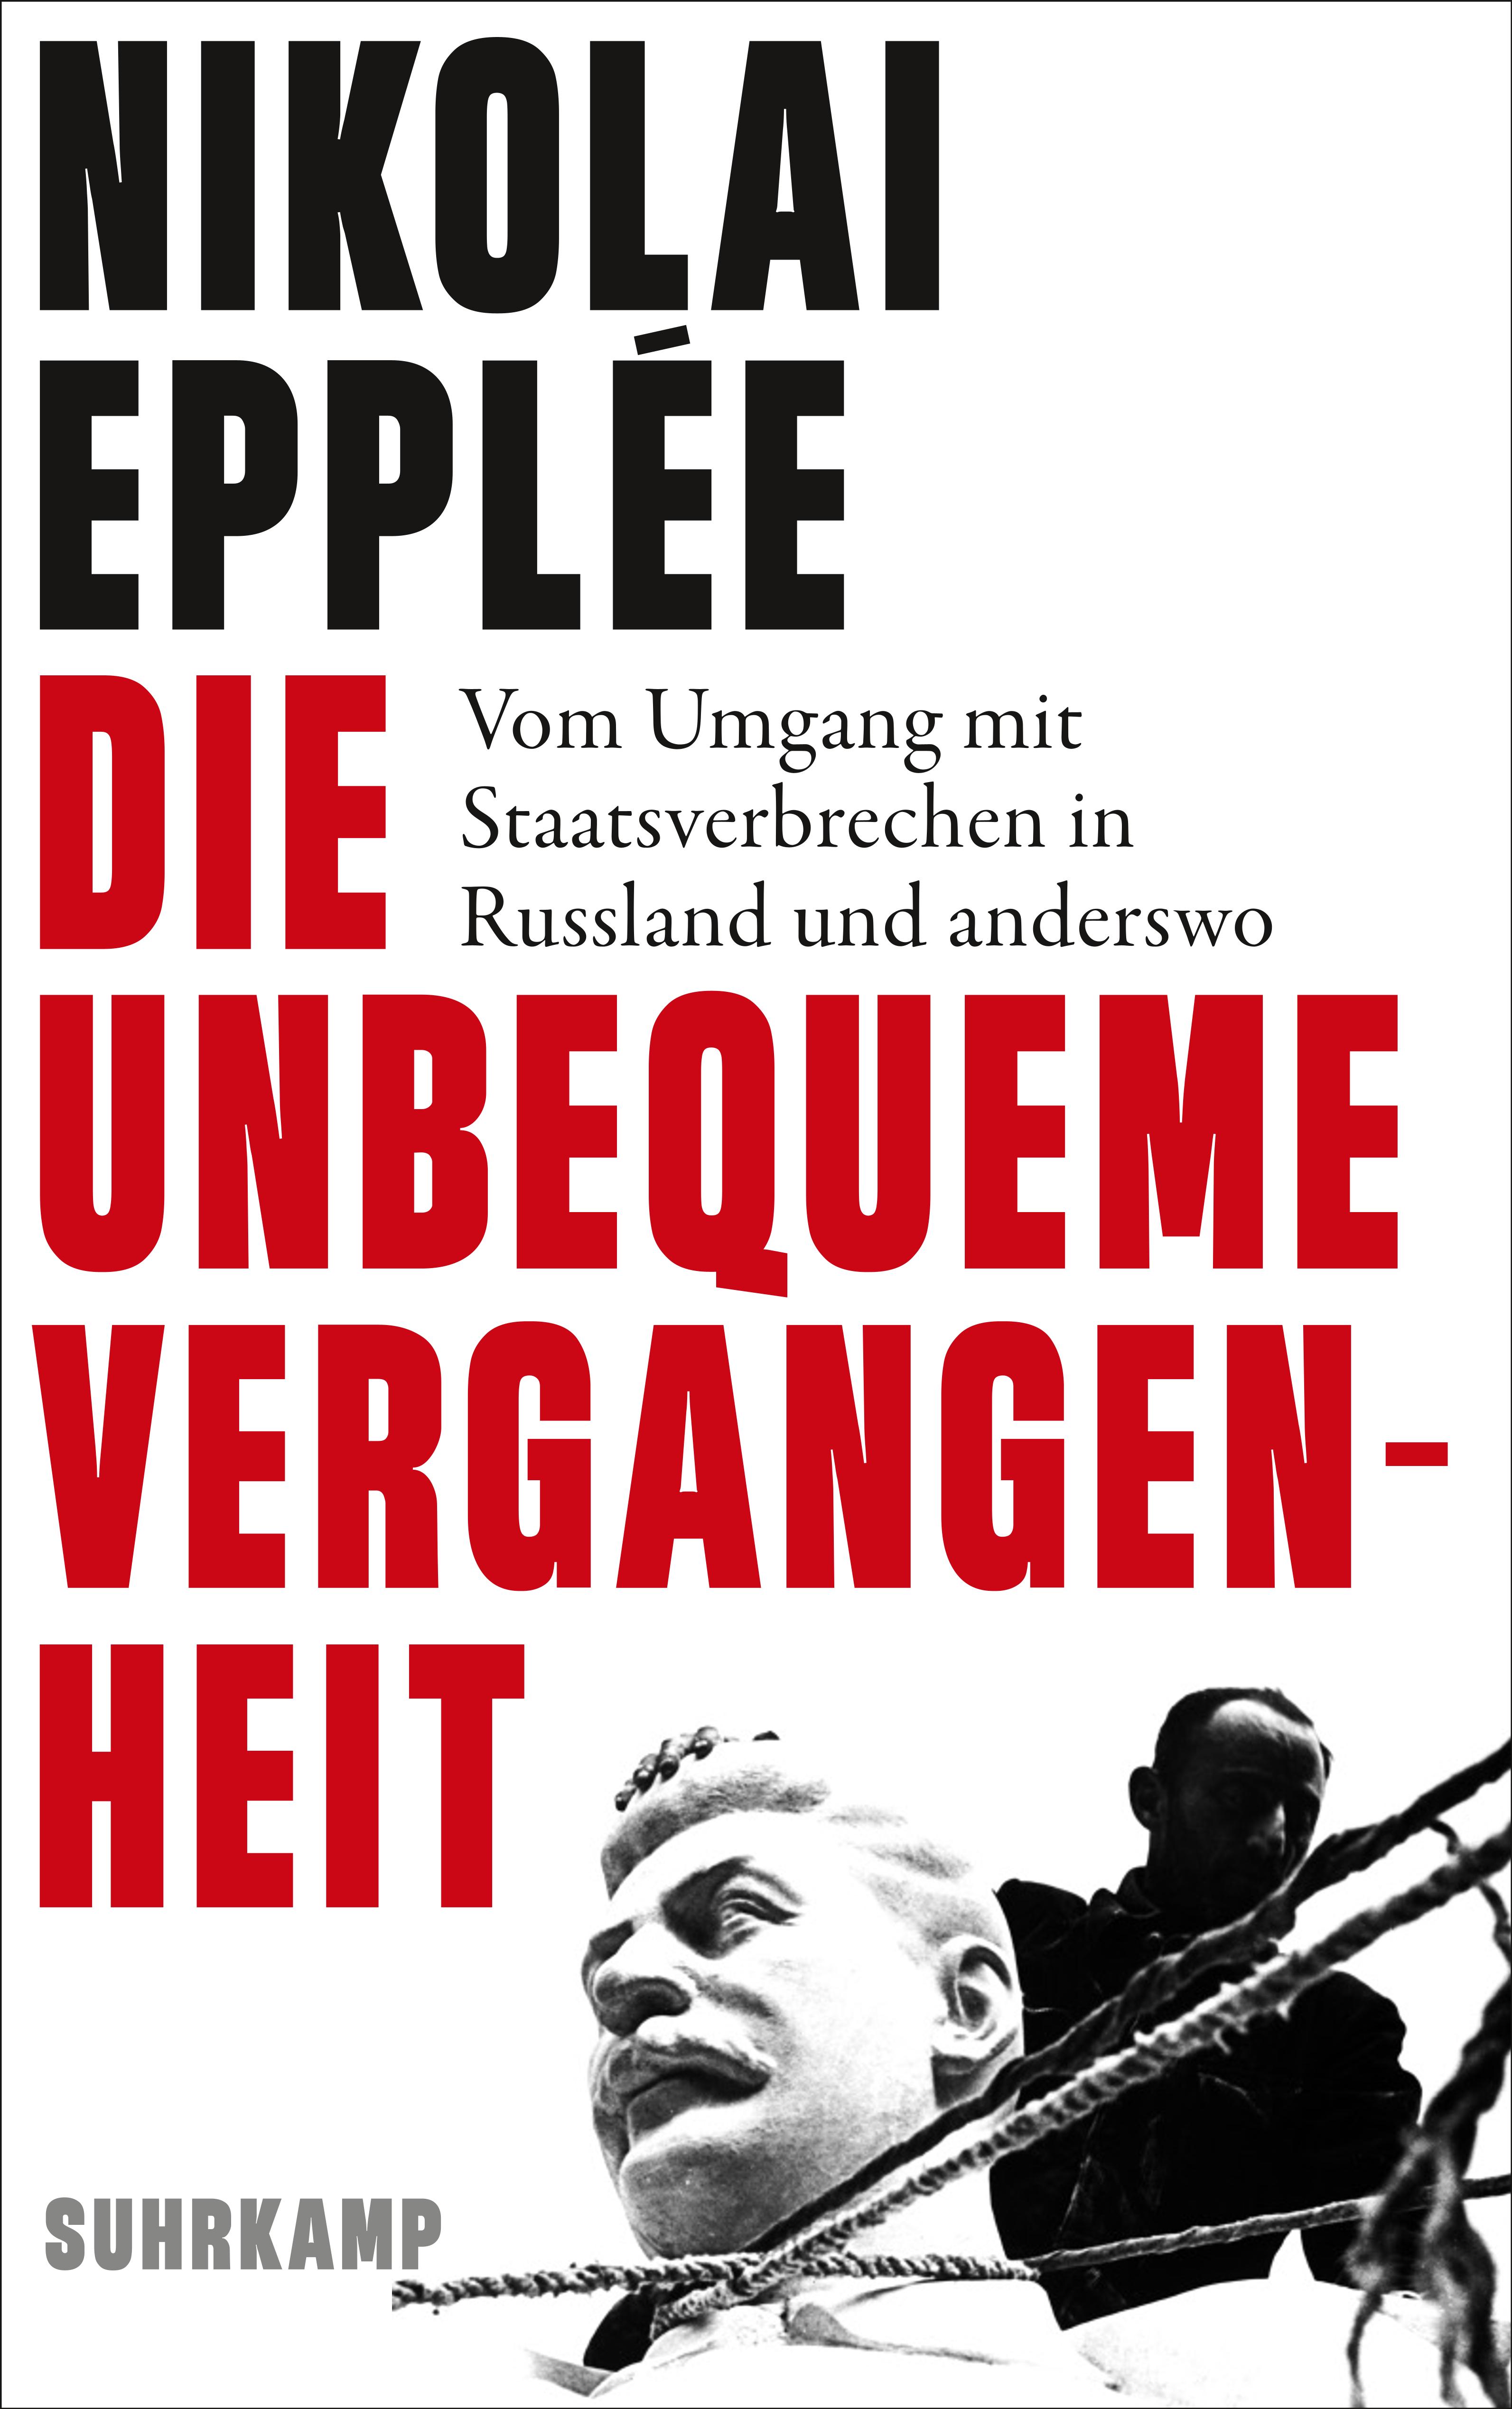 Cover des Buches. Der Titel ist in fetten roten Buchstaben geschrieben. Als Grafik sieht man den Abbau einer Stalinbüste.